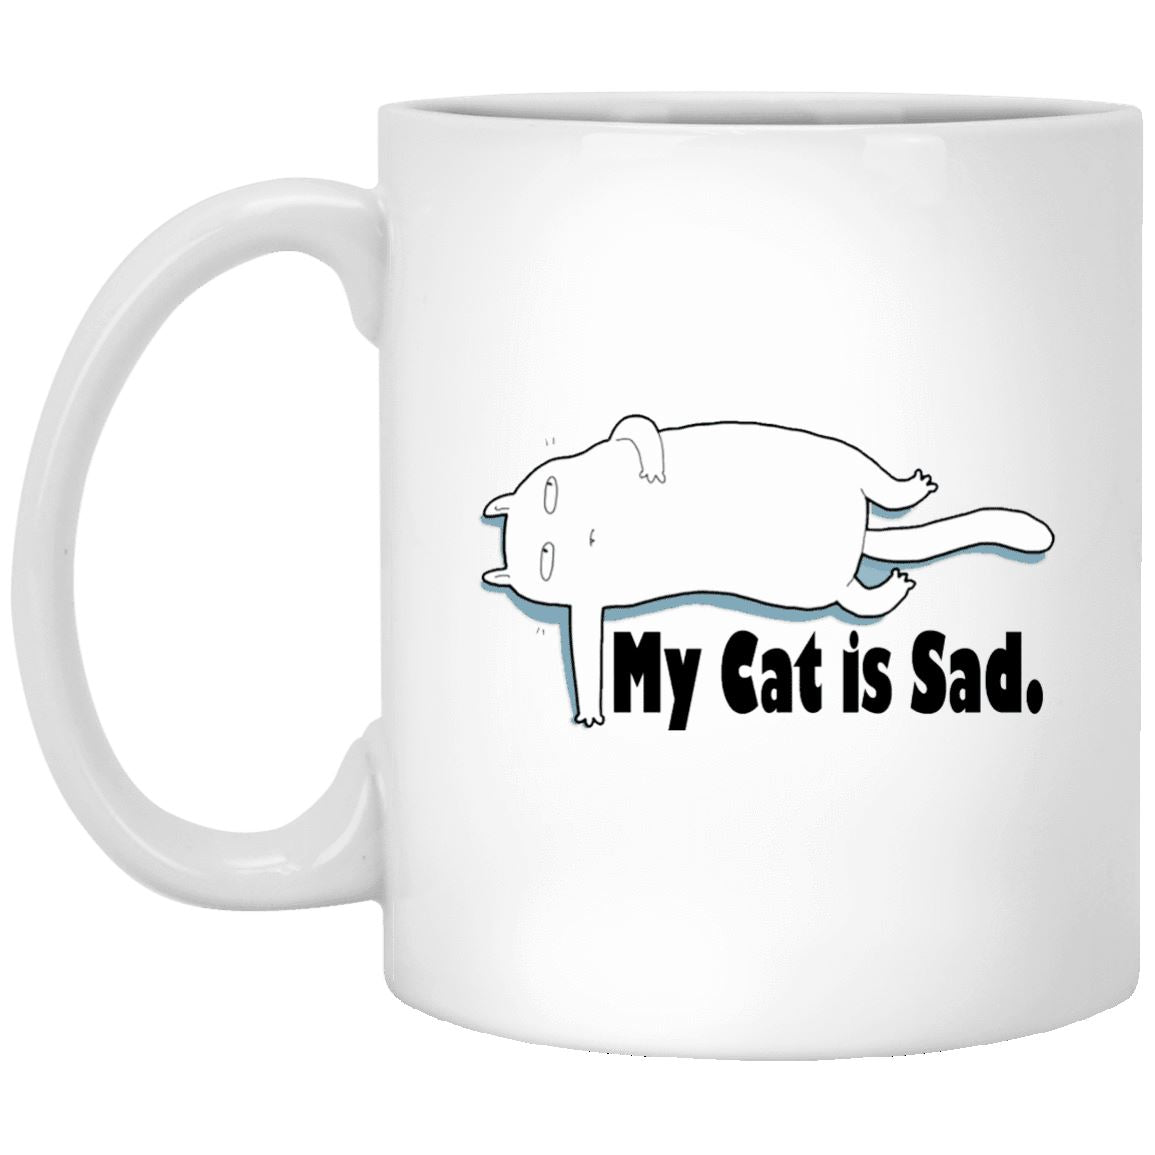 Cat Mug - My Cat Is Sad - CatsForLife